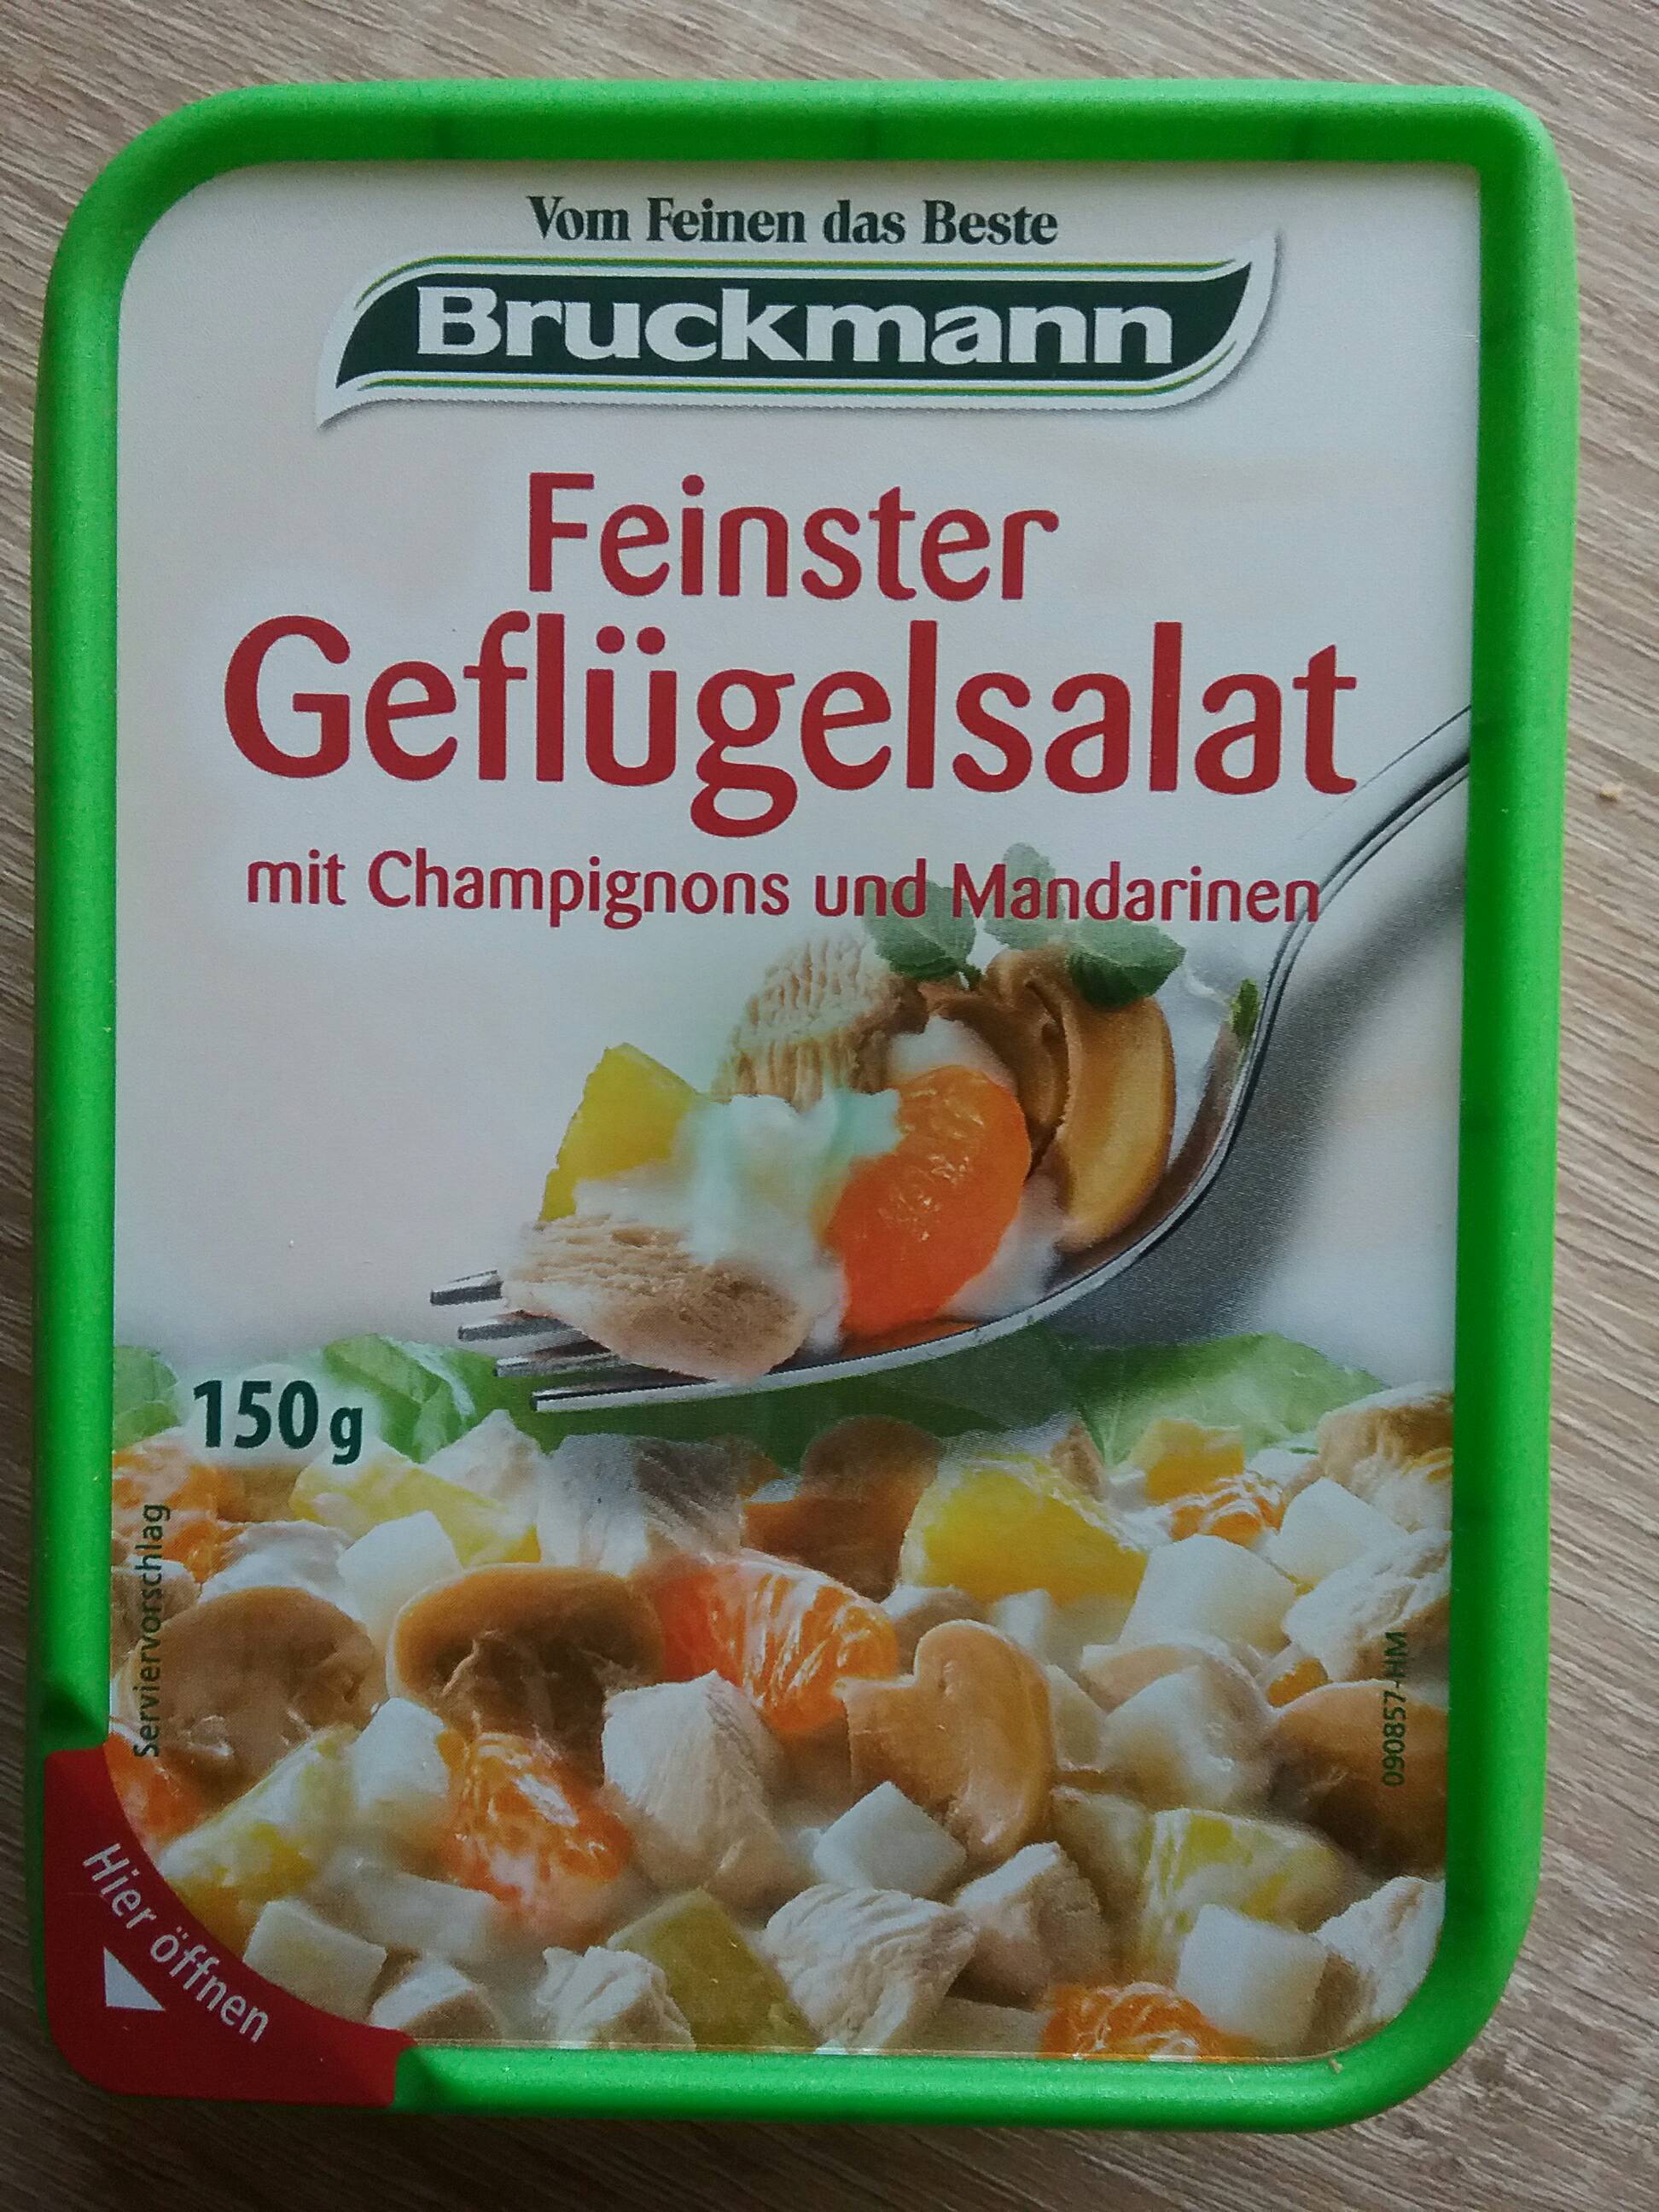 Eine Marke von Popp-Feinkost GmbH.